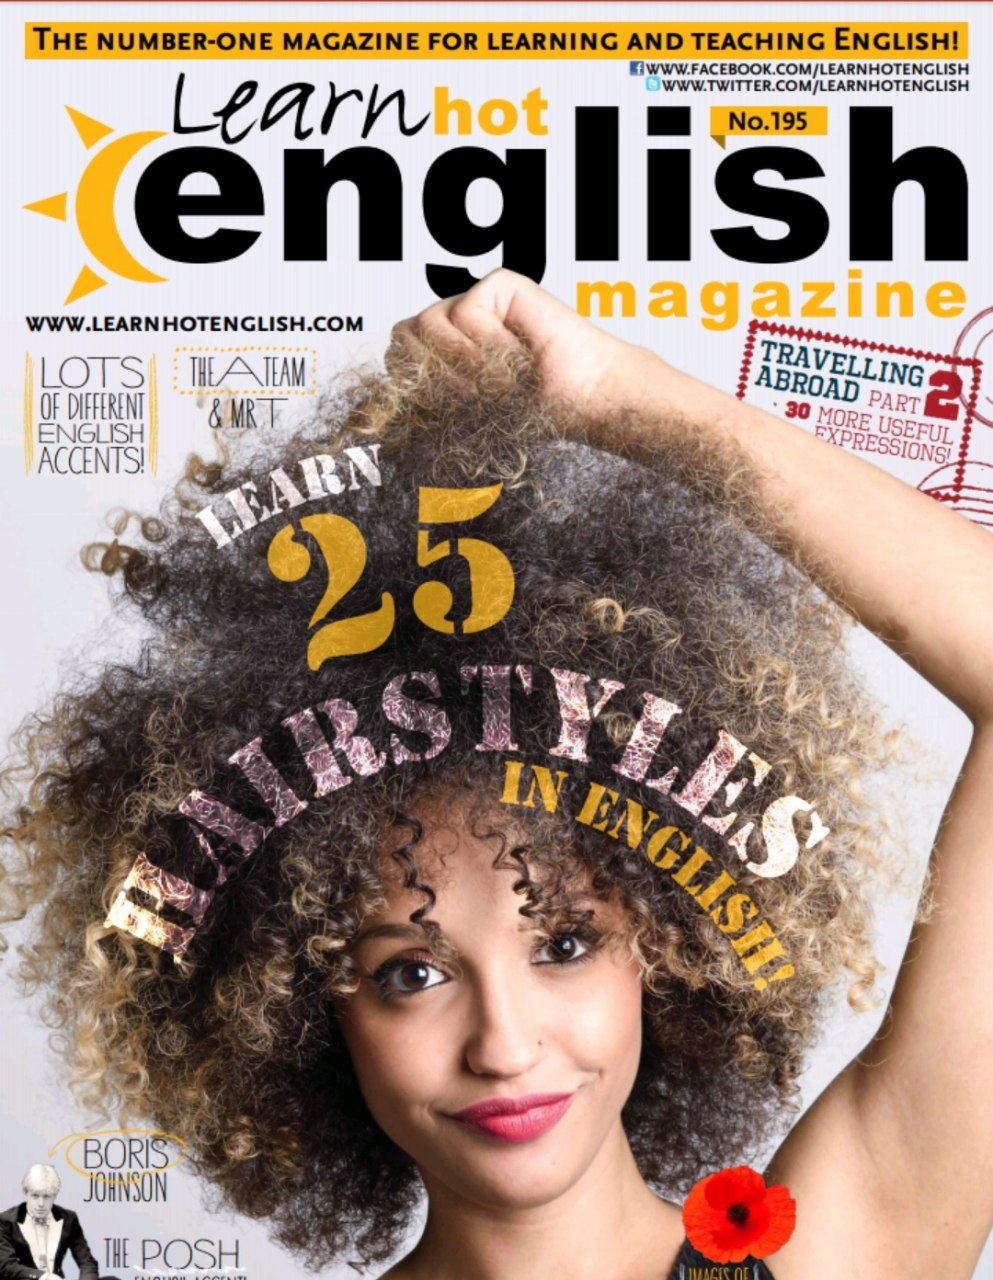 Название английских журналов. Hot English журнал. Learn hot English. Английские журналы. Learn hot English Magazine.